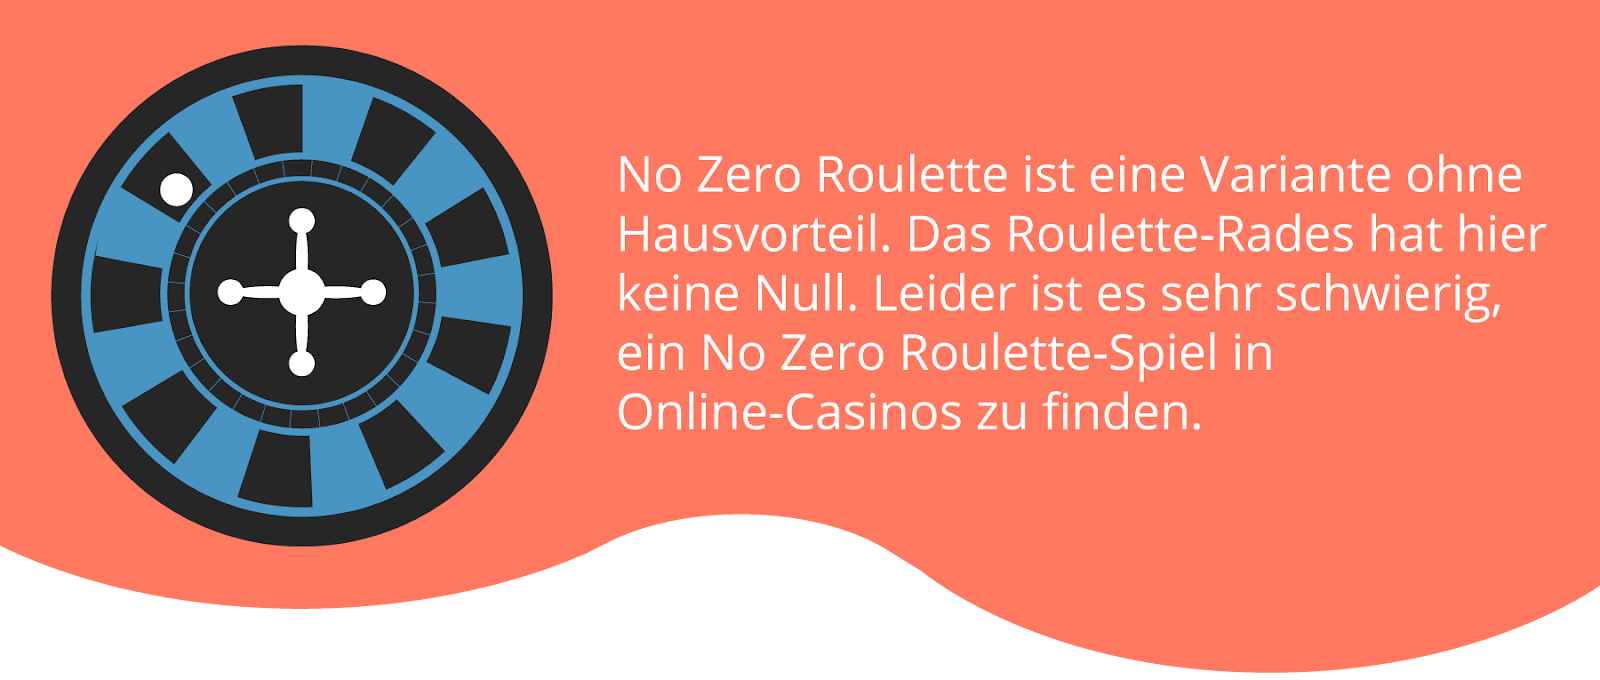 No Zero Roulette